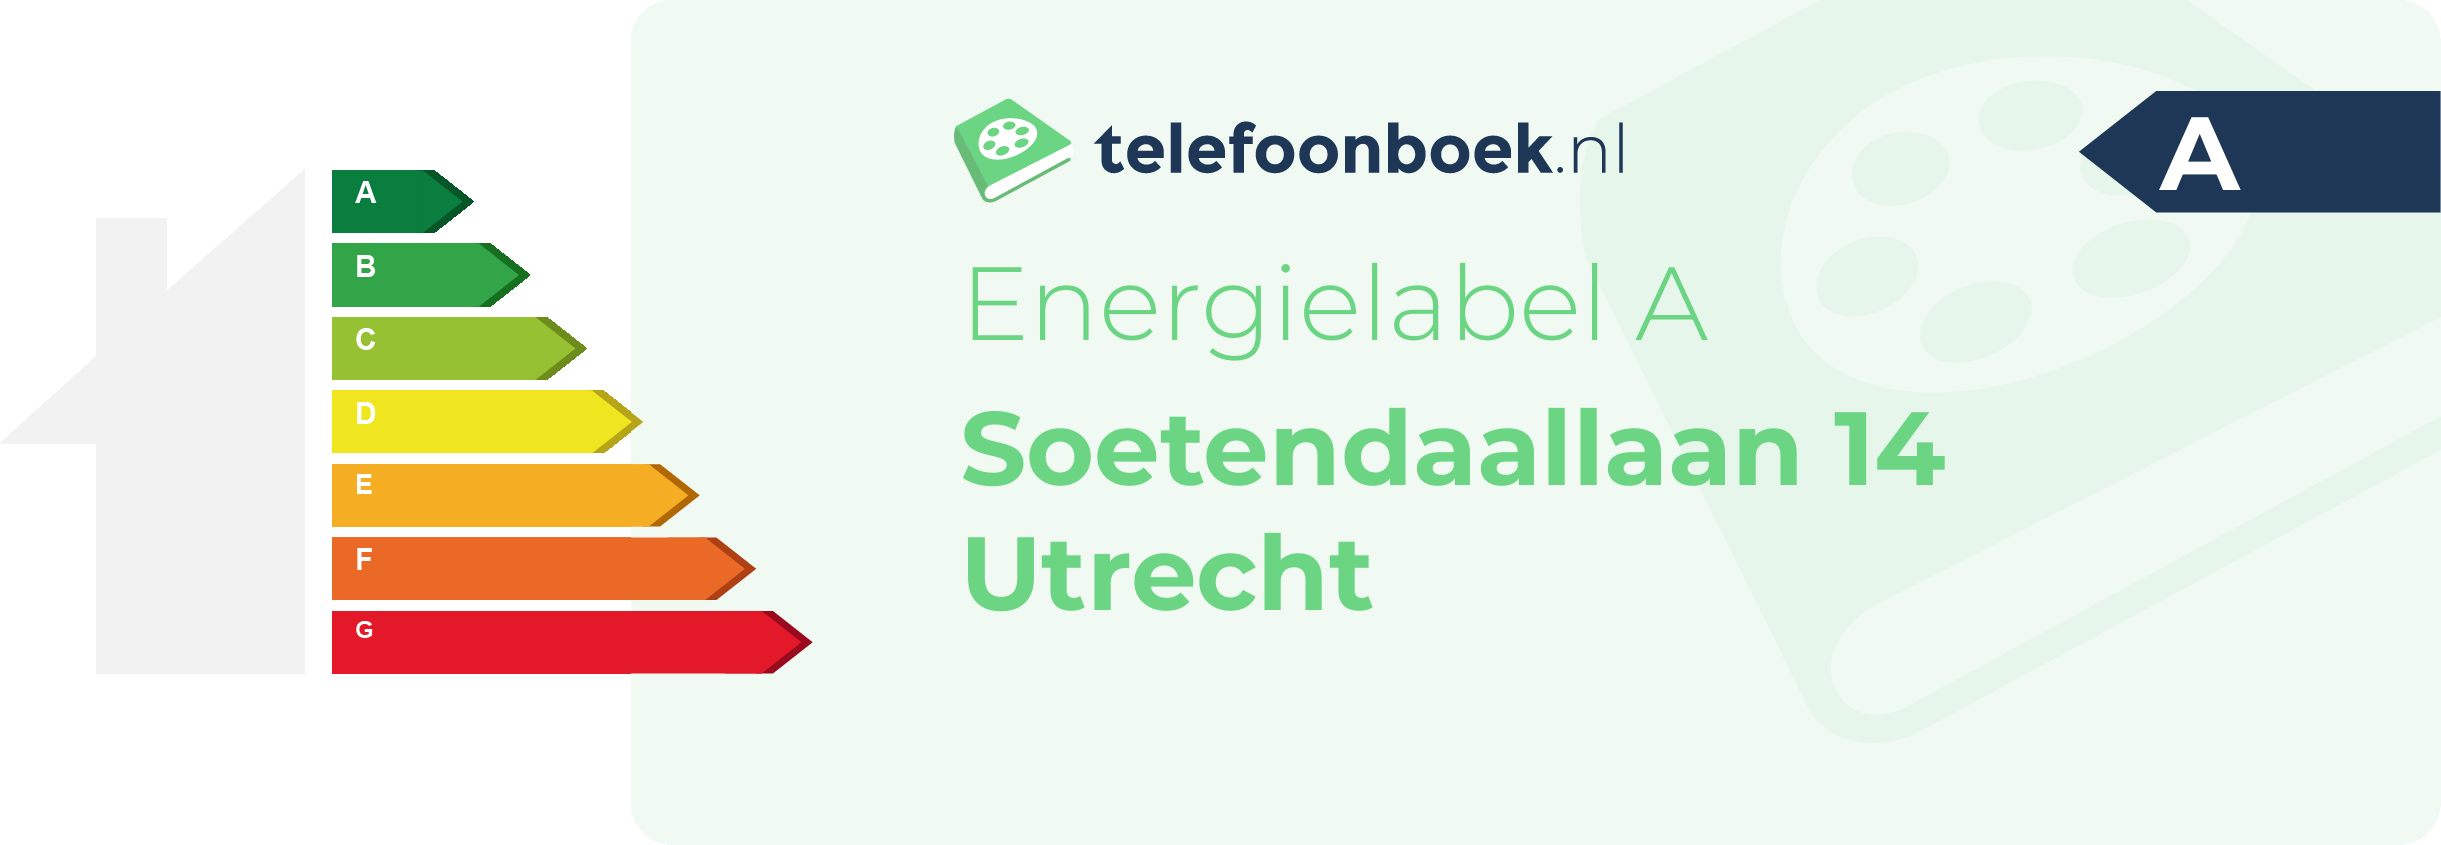 Energielabel Soetendaallaan 14 Utrecht